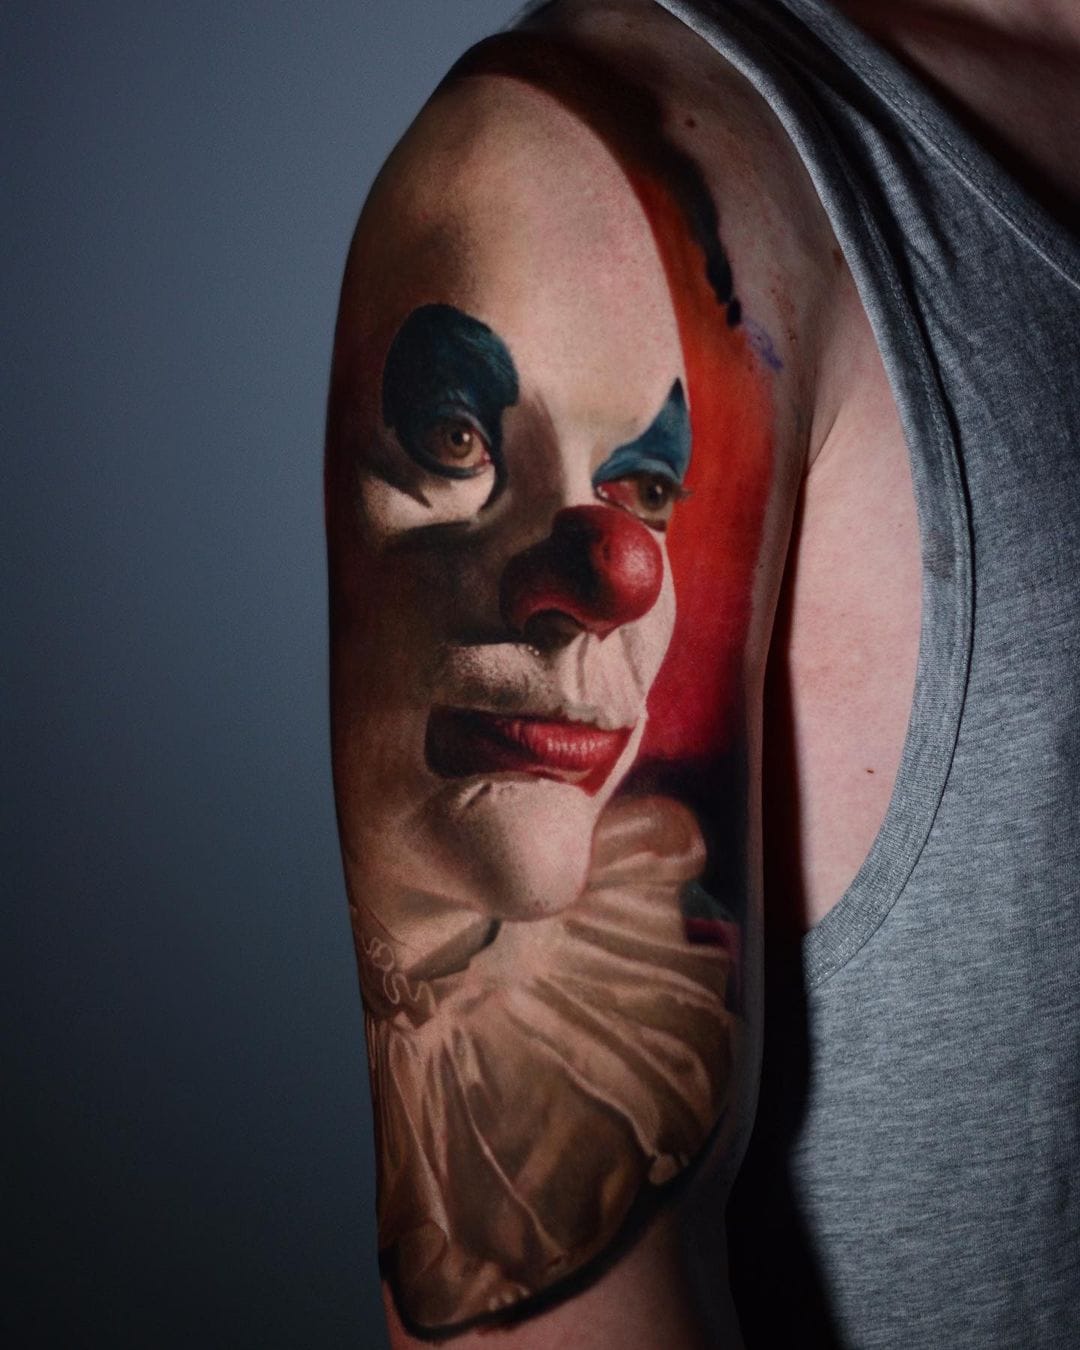 Польский тату-мастер работает в стиле портретного реализма. И его работы сложно отличить от фото 47